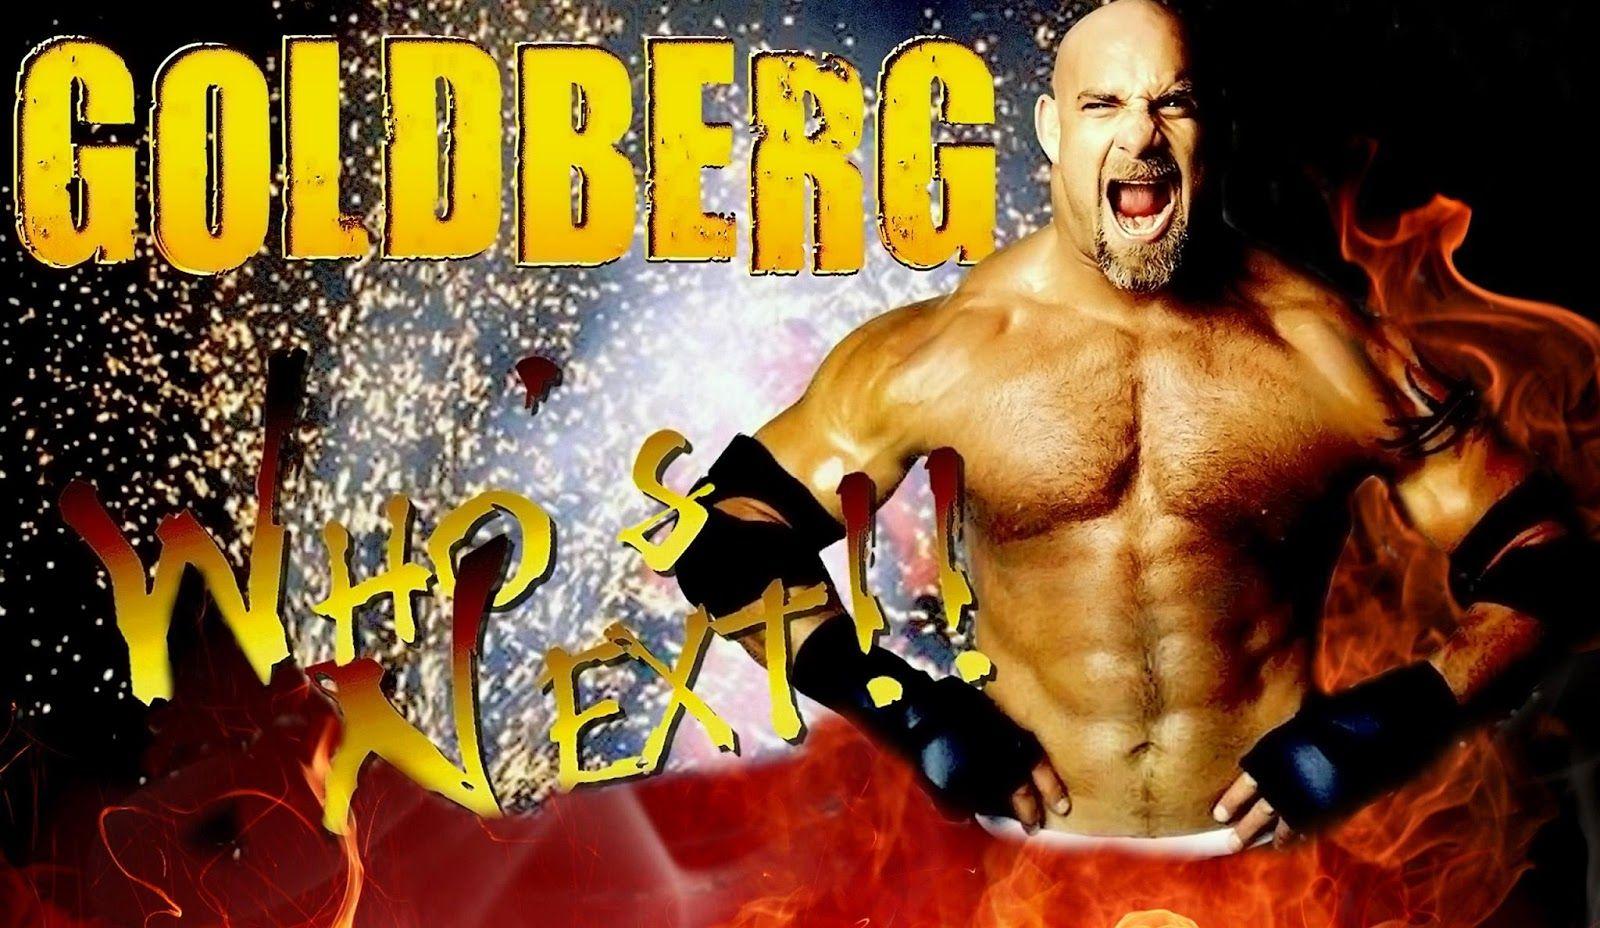 Goldberg HD Wallpaper Free Download. WWE HD WALLPAPER FREE DOWNLOAD